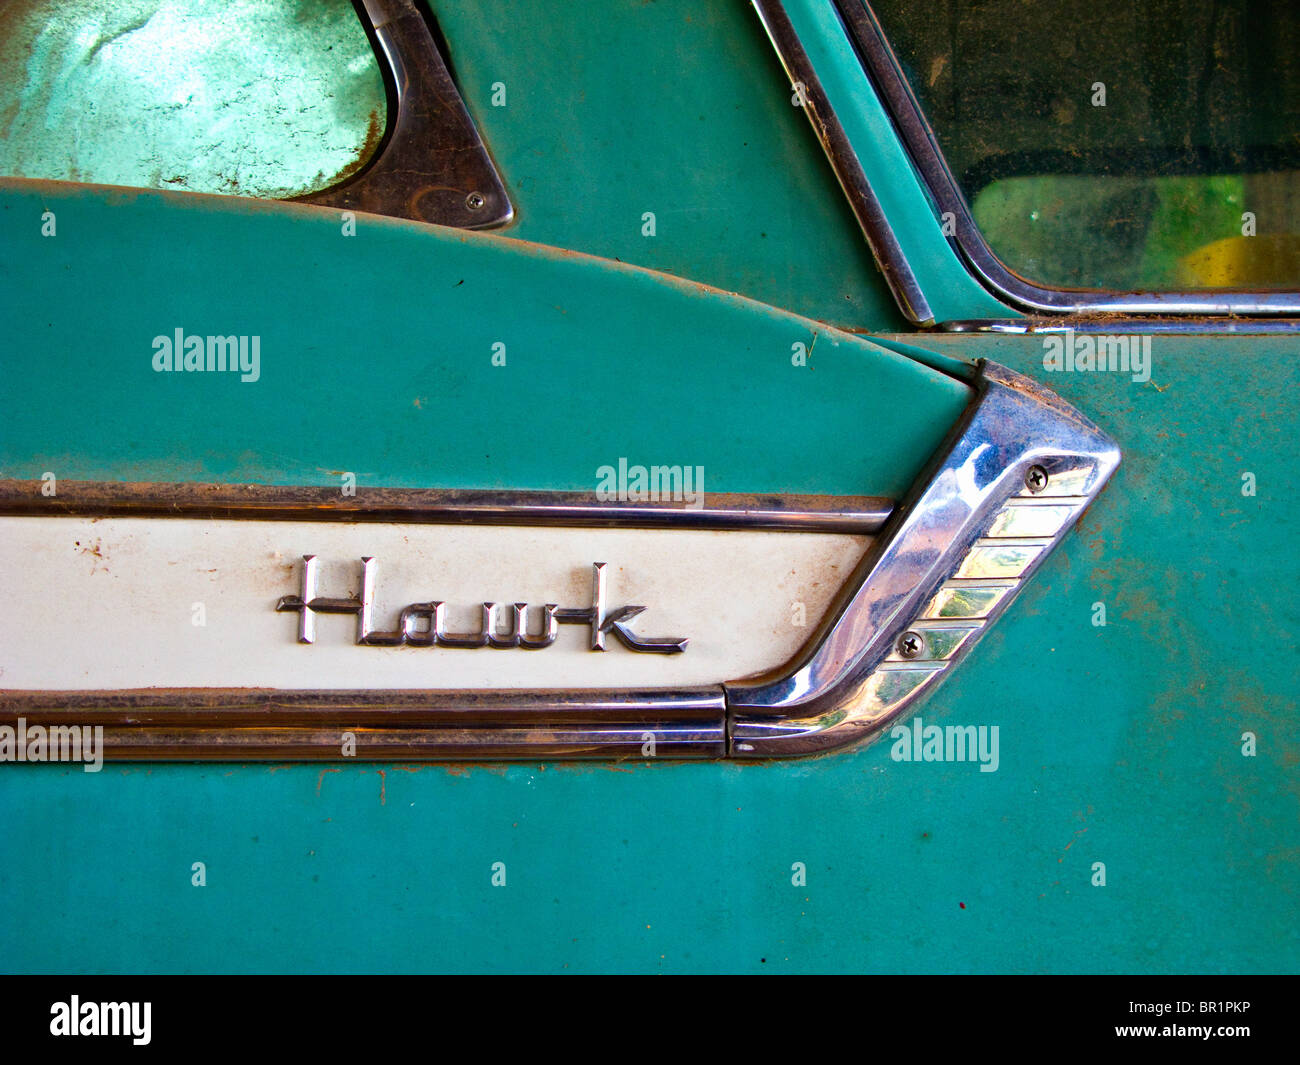 Studebaker Hawk nameplate Stock Photo